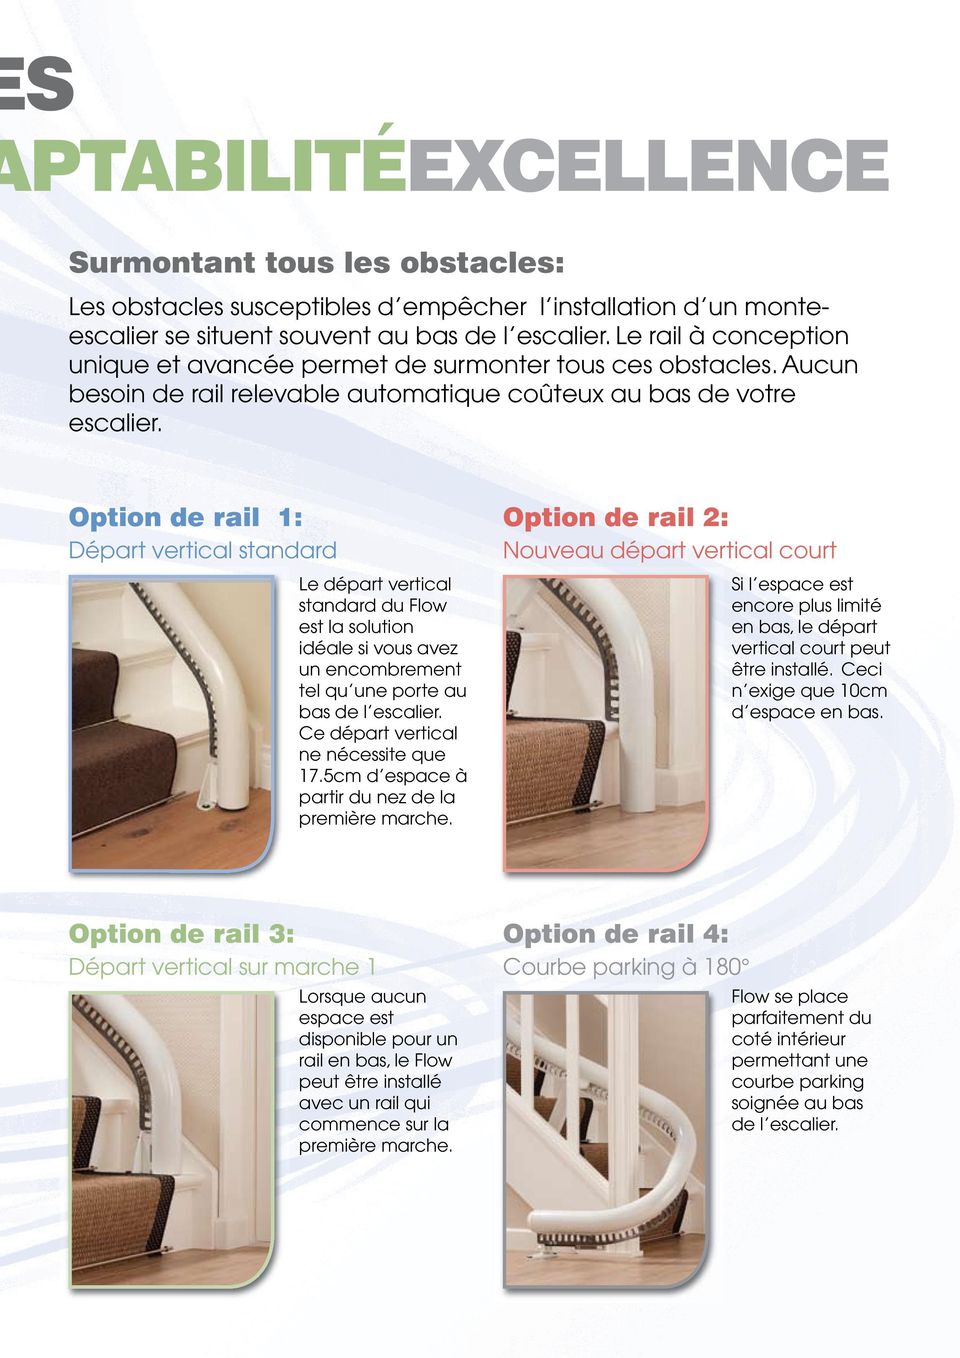 Option de rail 1: Départ vertical standard Le départ vertical standard du Flow est la solution idéale si vous avez un encombrement tel qu une porte au bas de l escalier.